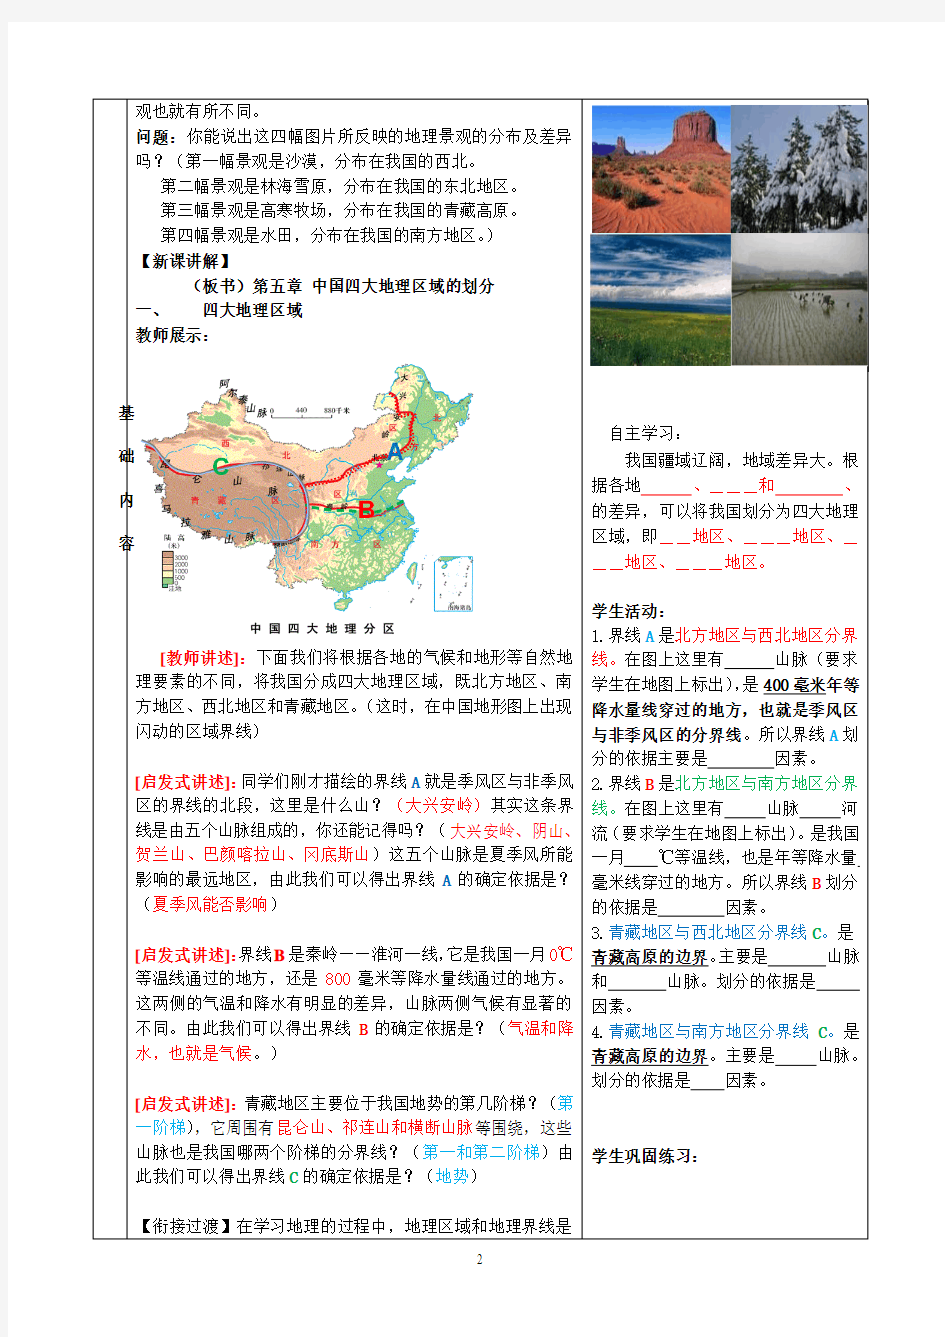 第五章中国四大地理区域的划分